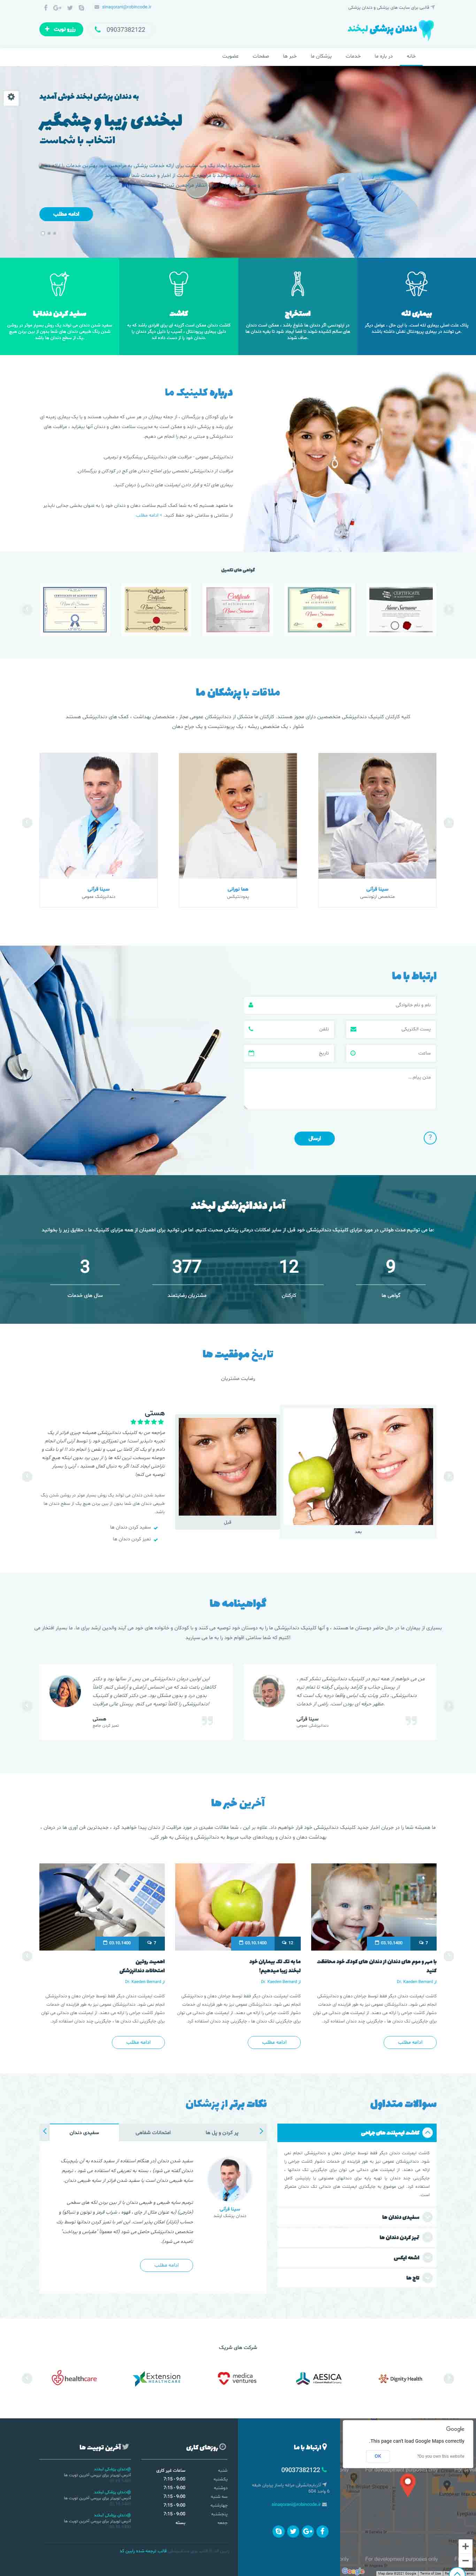 قالب سایت دندان پزشکی لبخند - RobinCode.ir